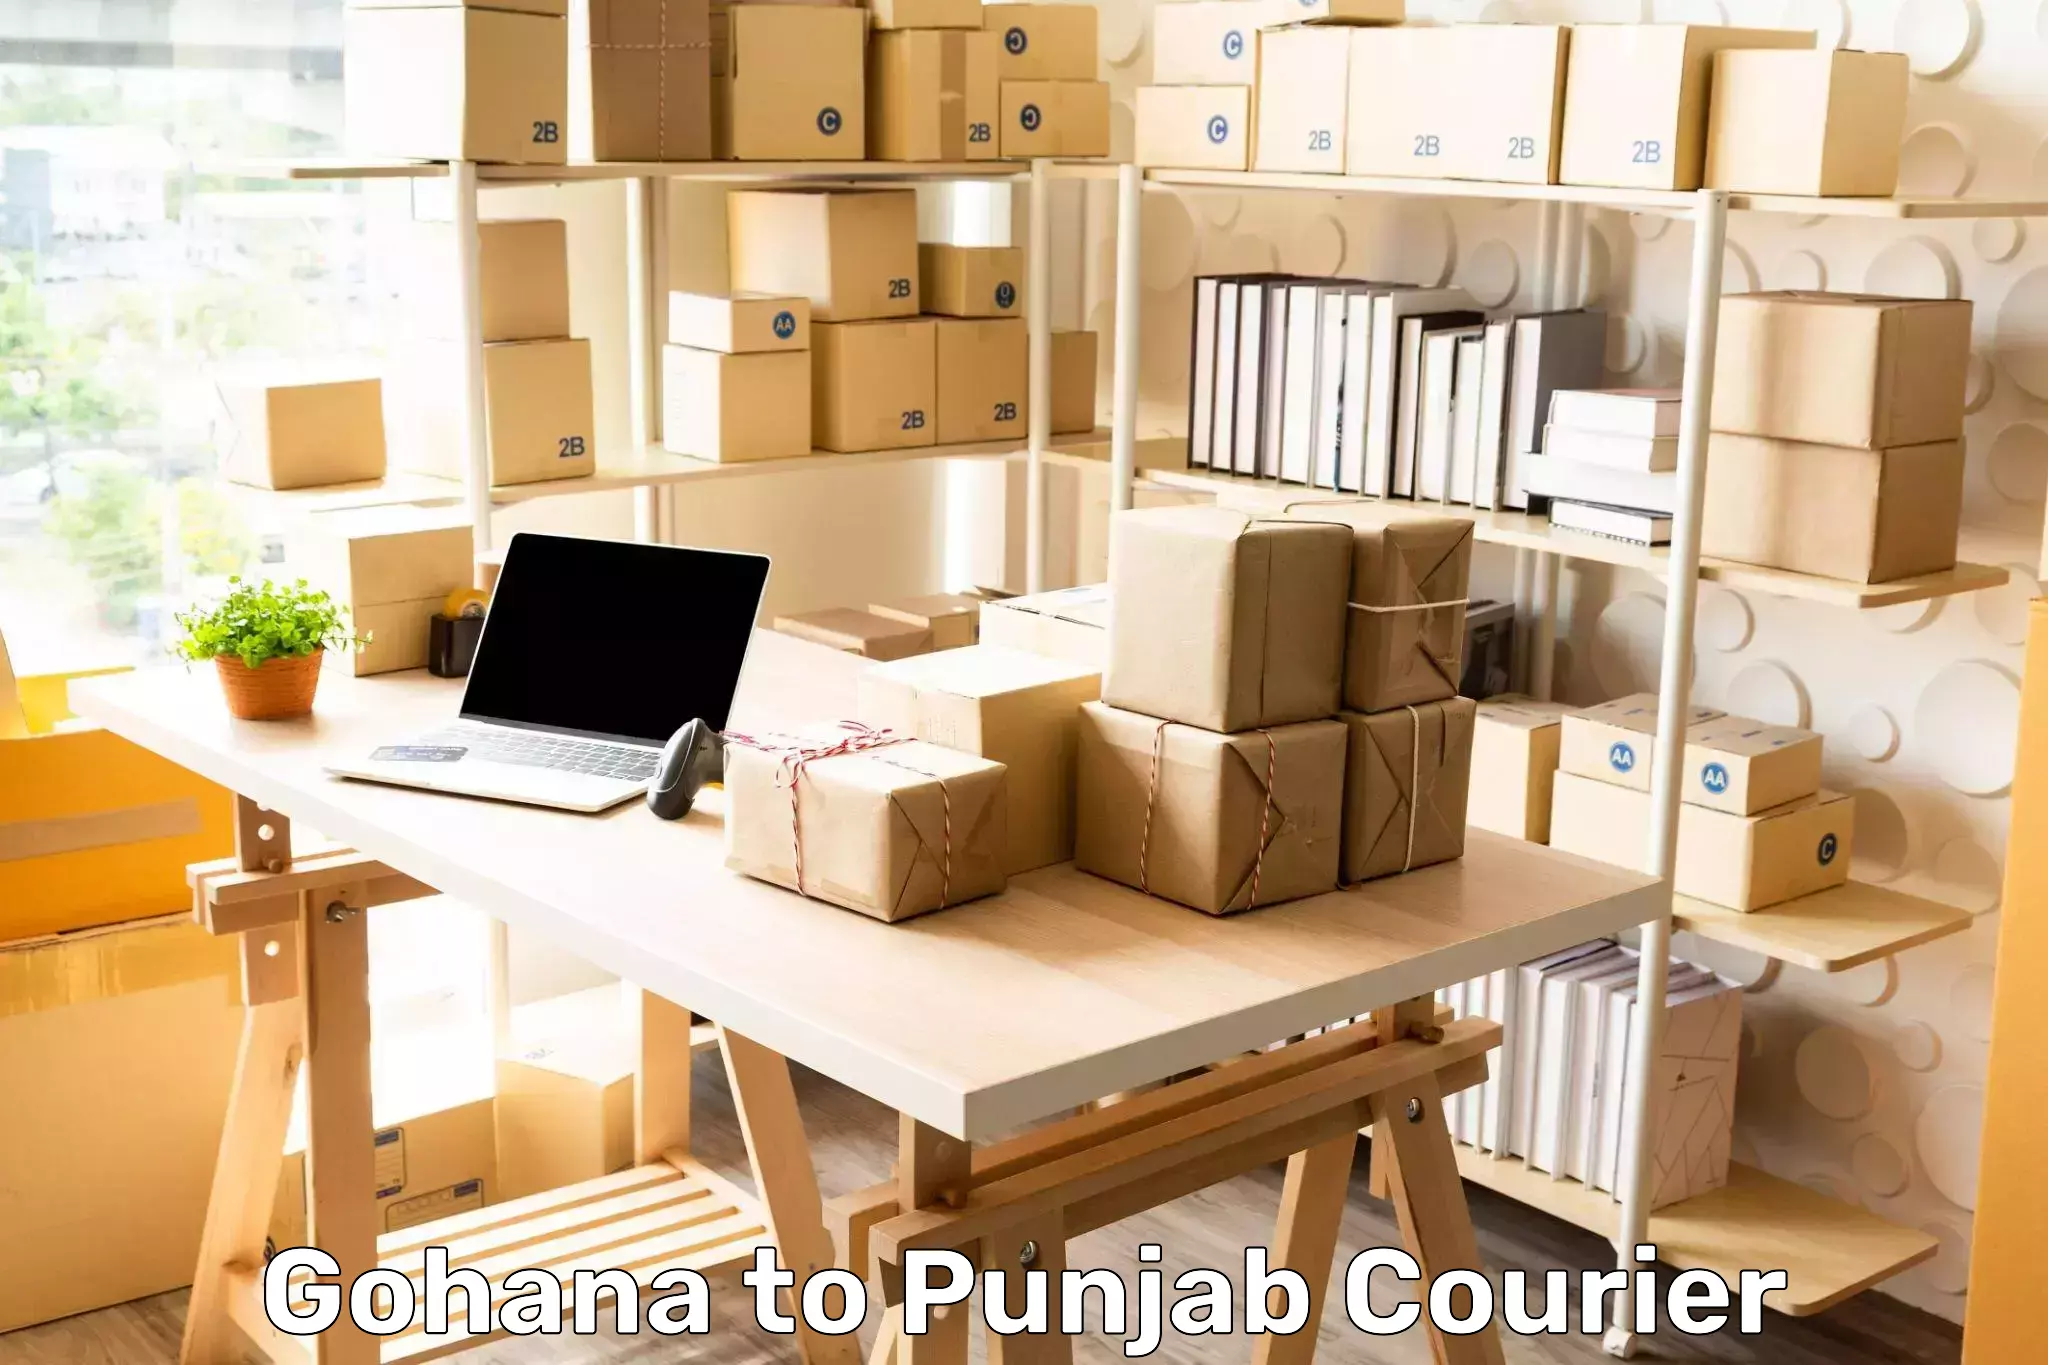 Business shipping needs Gohana to Anandpur Sahib